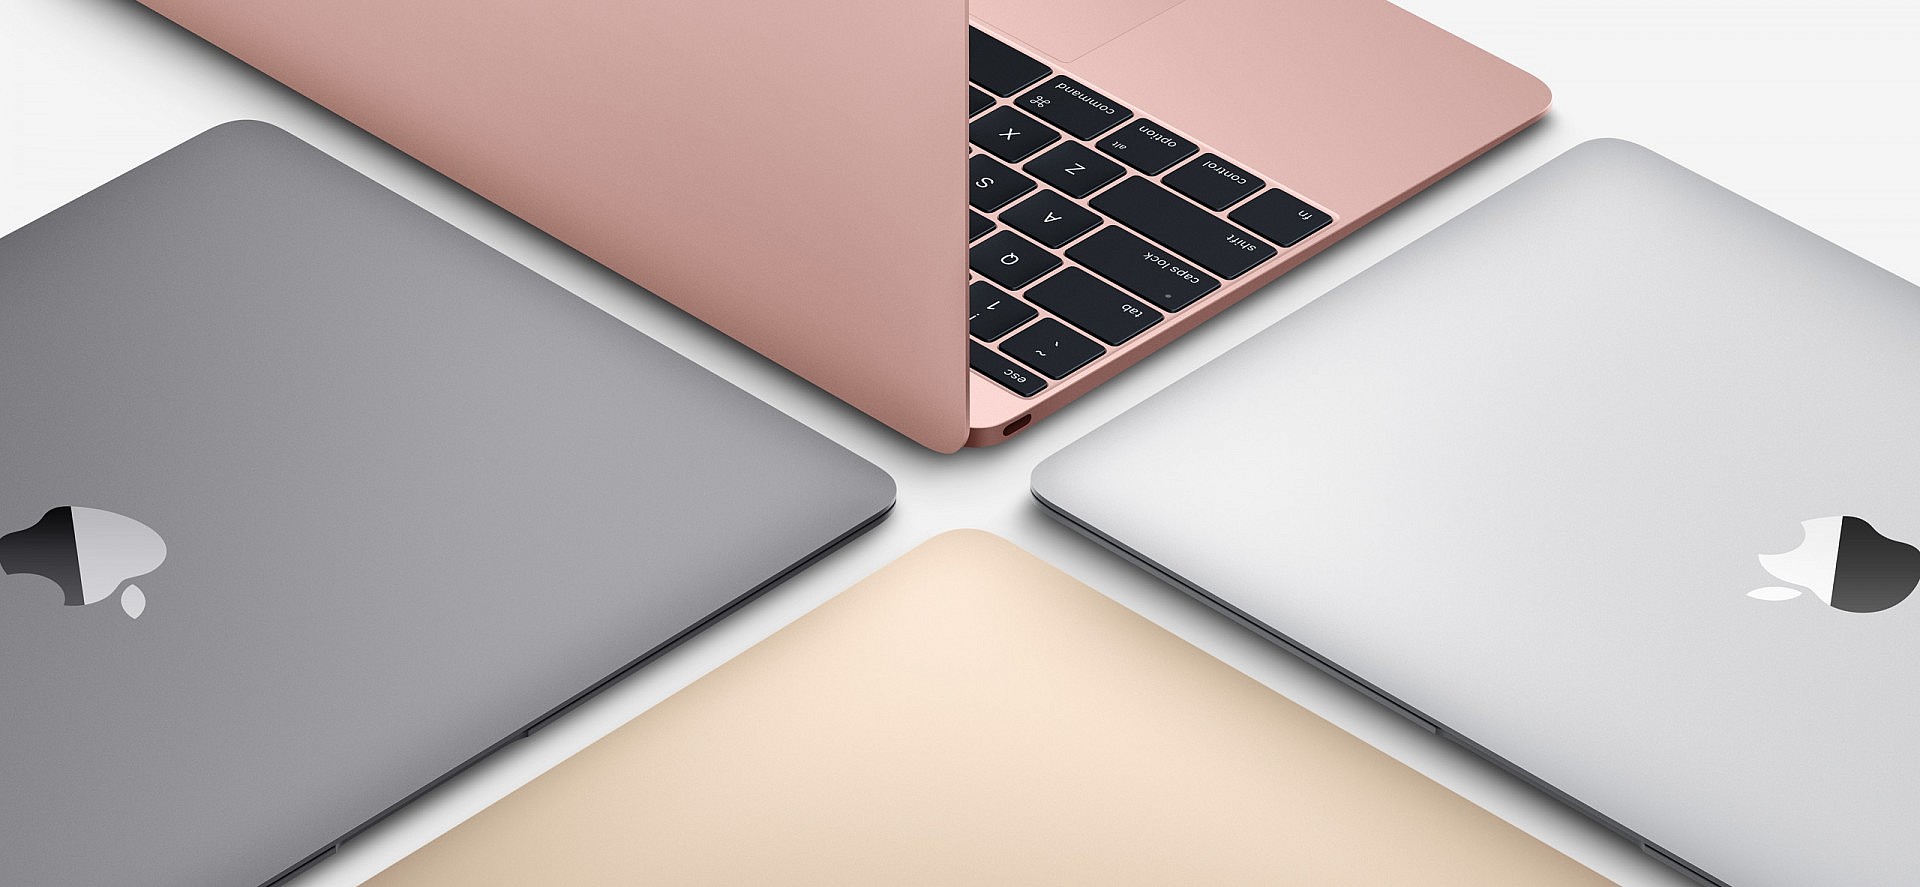 มาดูข้อแตกต่างกันว่า MacBook 12 นิ้วของปี 2015 แตกต่างจากของปี 2016 ที่ออกมาใหม่อย่างไร